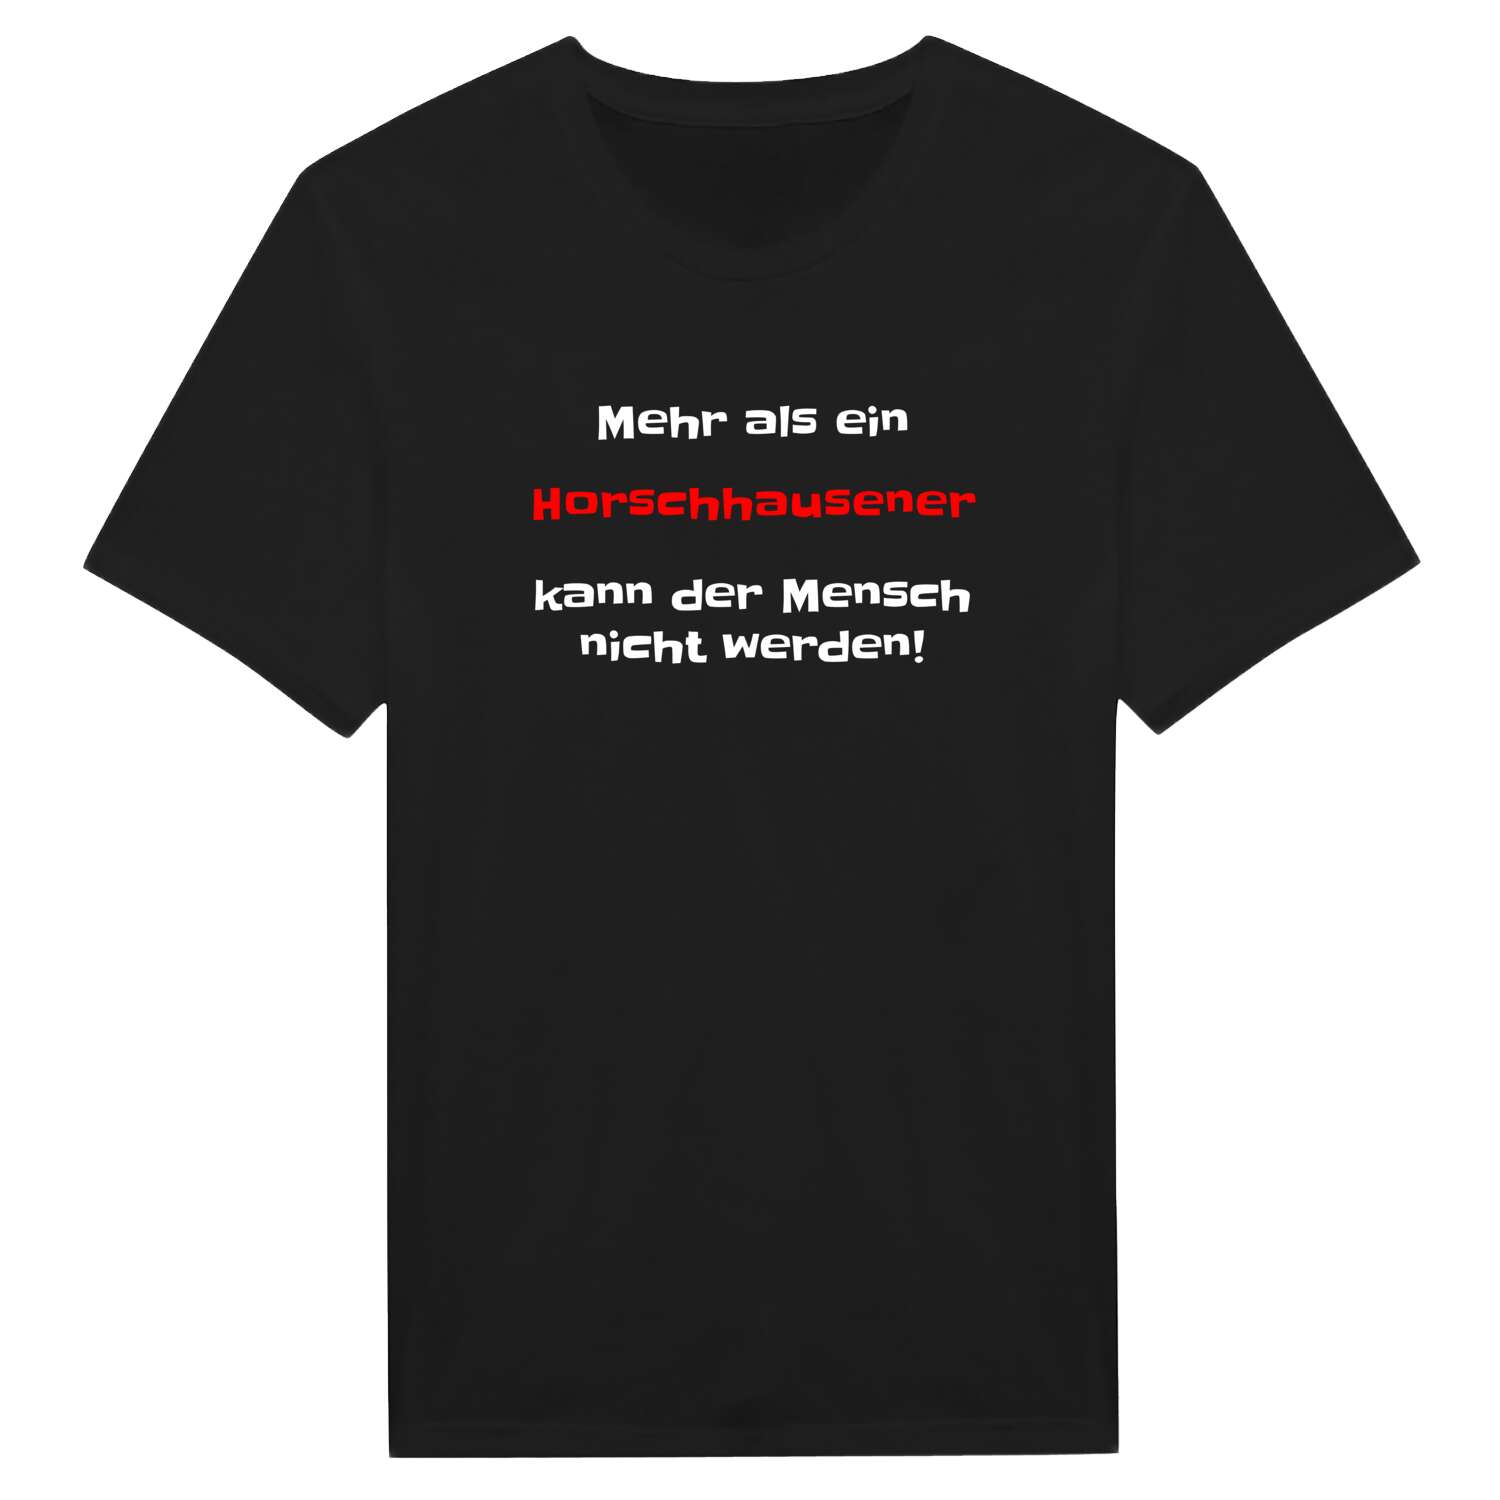 Horschhausen T-Shirt »Mehr als ein«